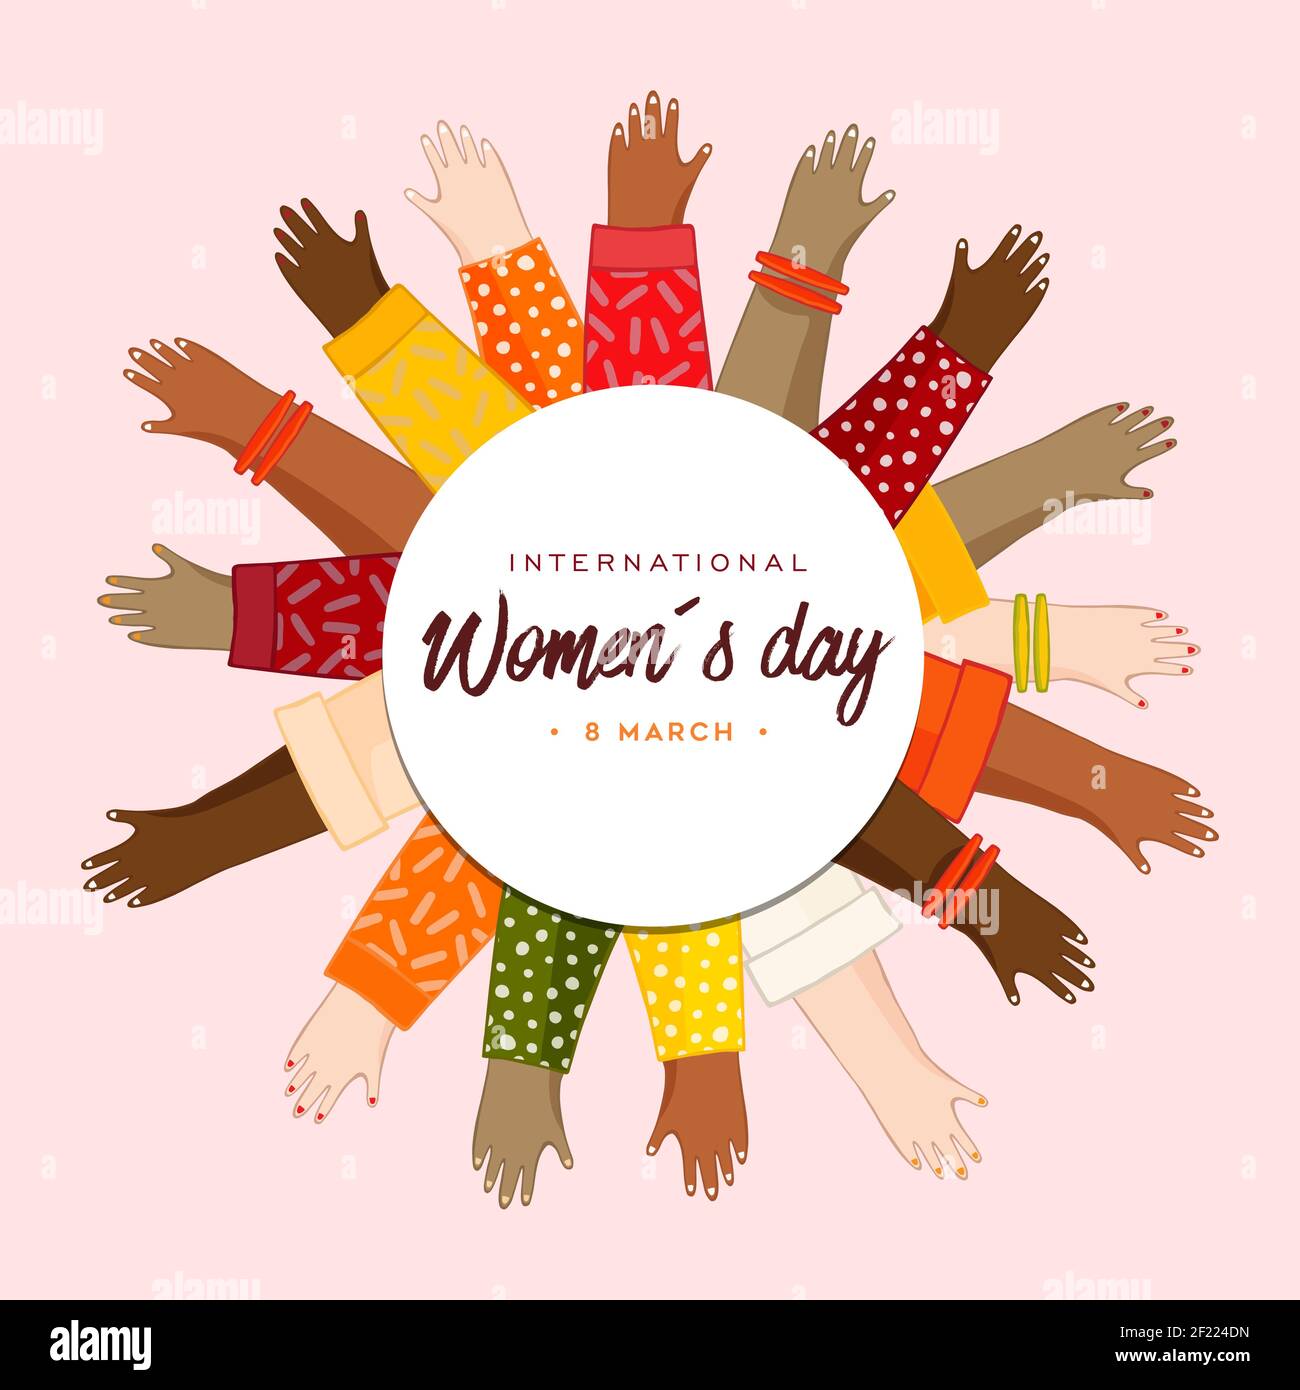 Internationaler Frauentag Grußkarte Illustration von verschiedenen Frauen Hände vereint für Frauenrechtskampagne oder Frau Freiheit Urlaub Veranstaltung. Stock Vektor